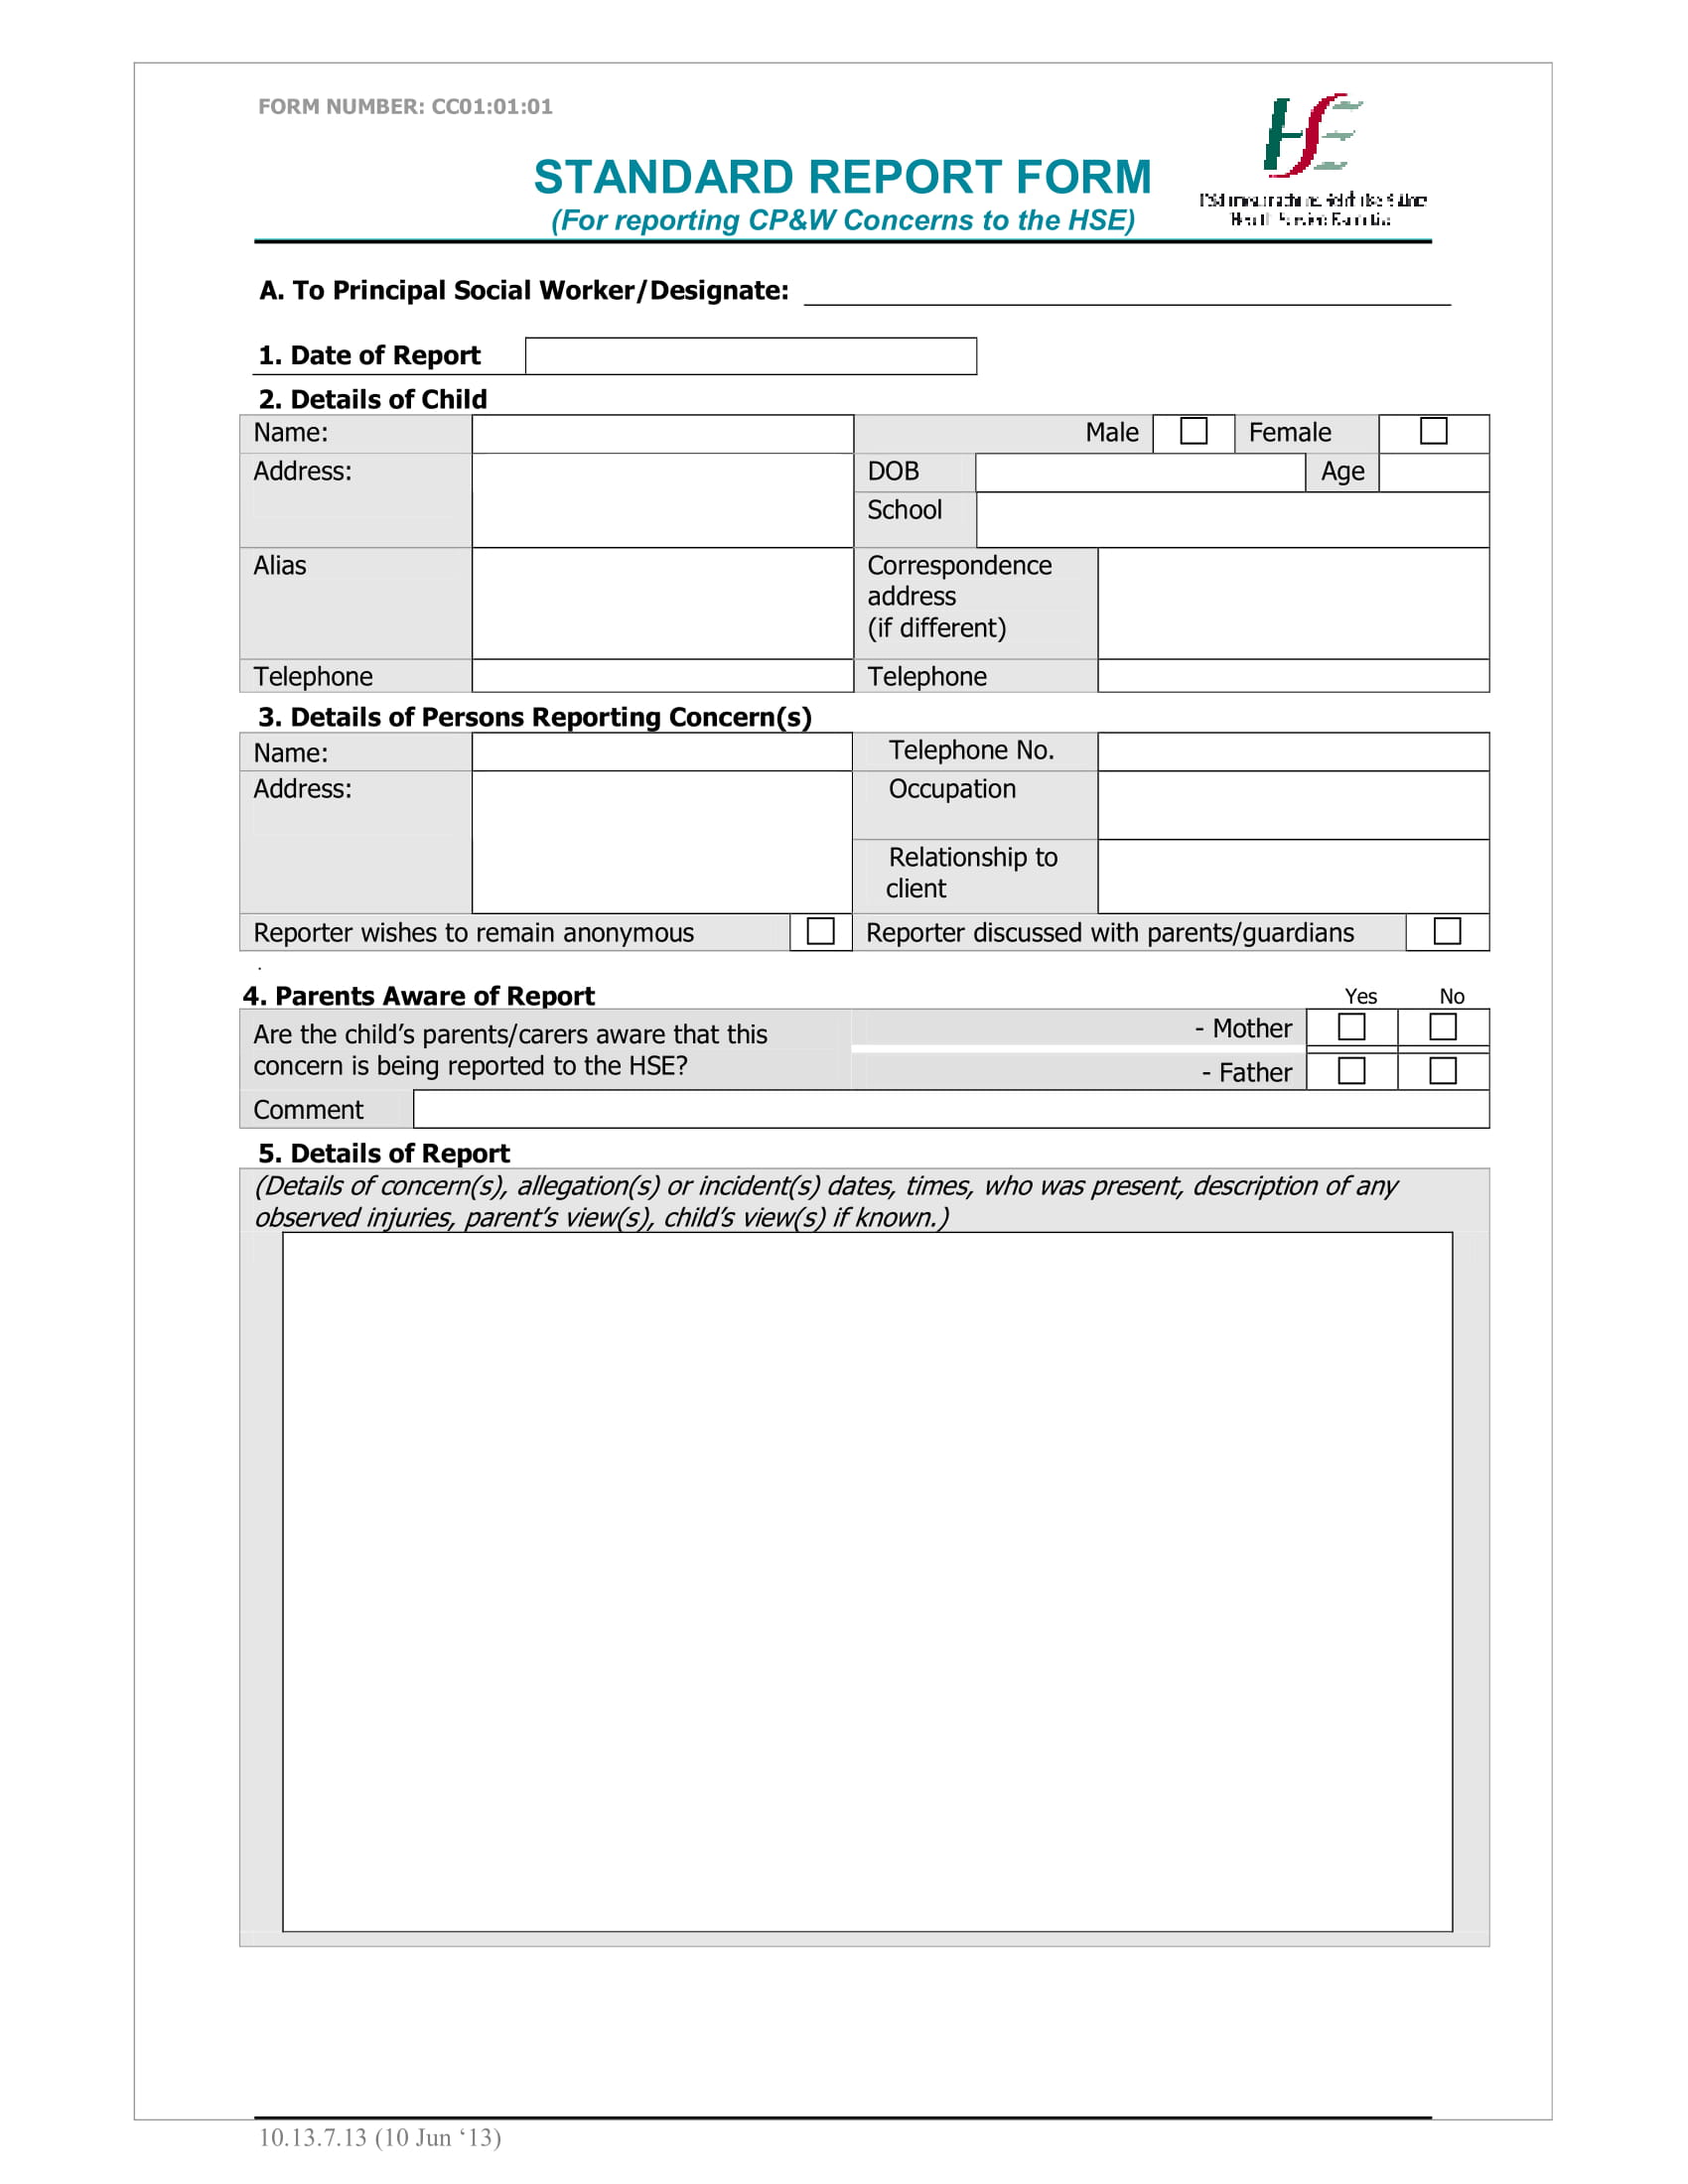 standard report form for child concerns 1